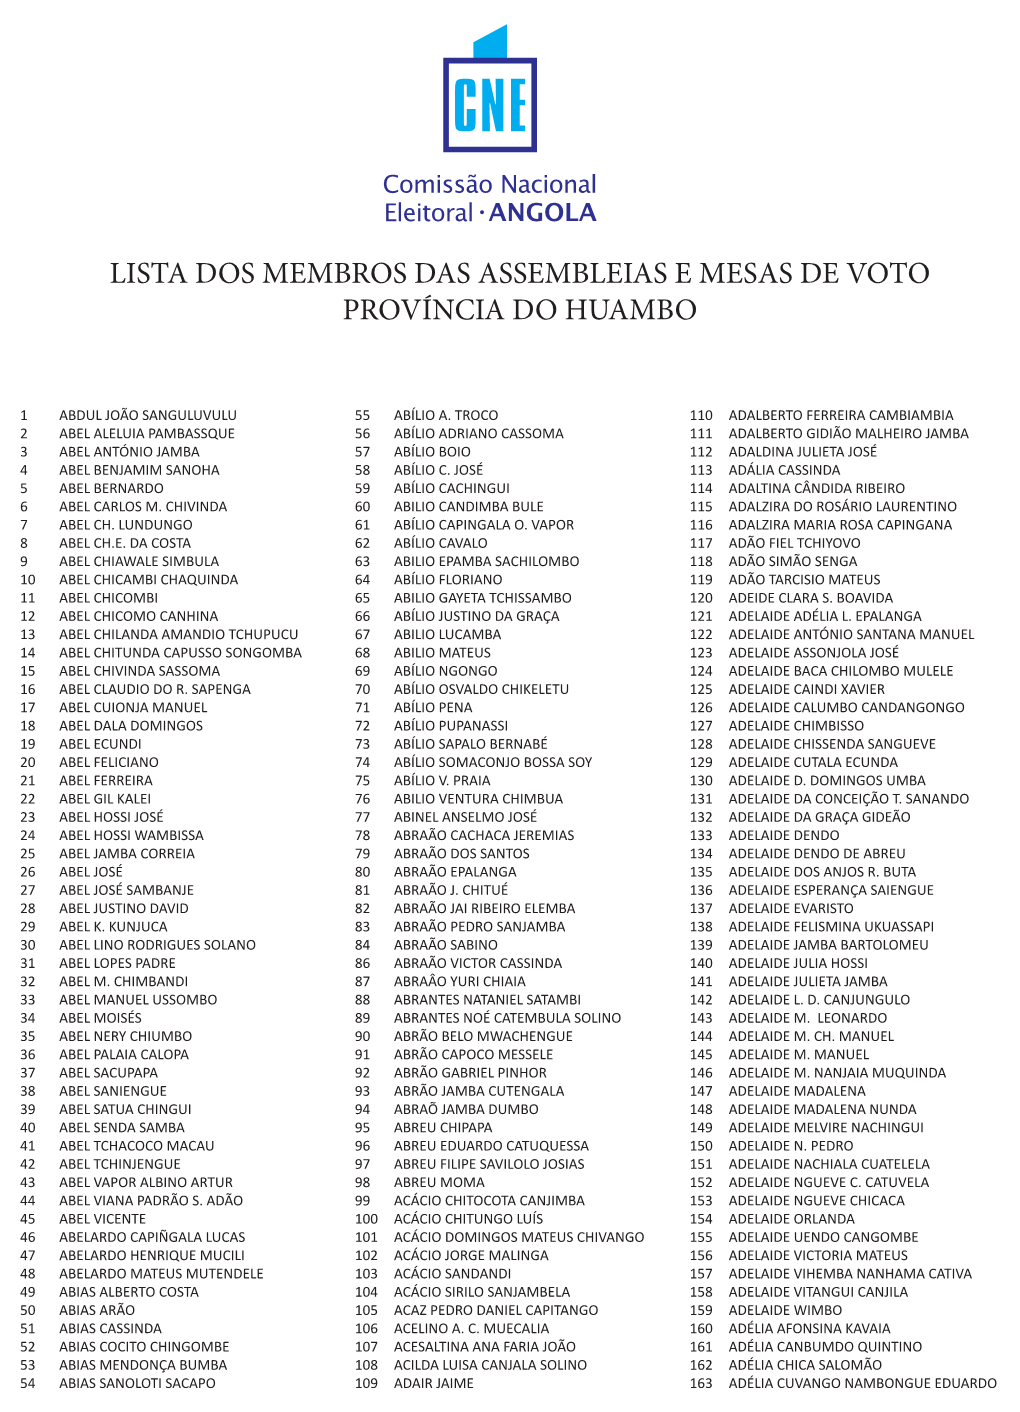 Lista Dos Membros Das Assembleias E Mesas De Voto Província Do Huambo